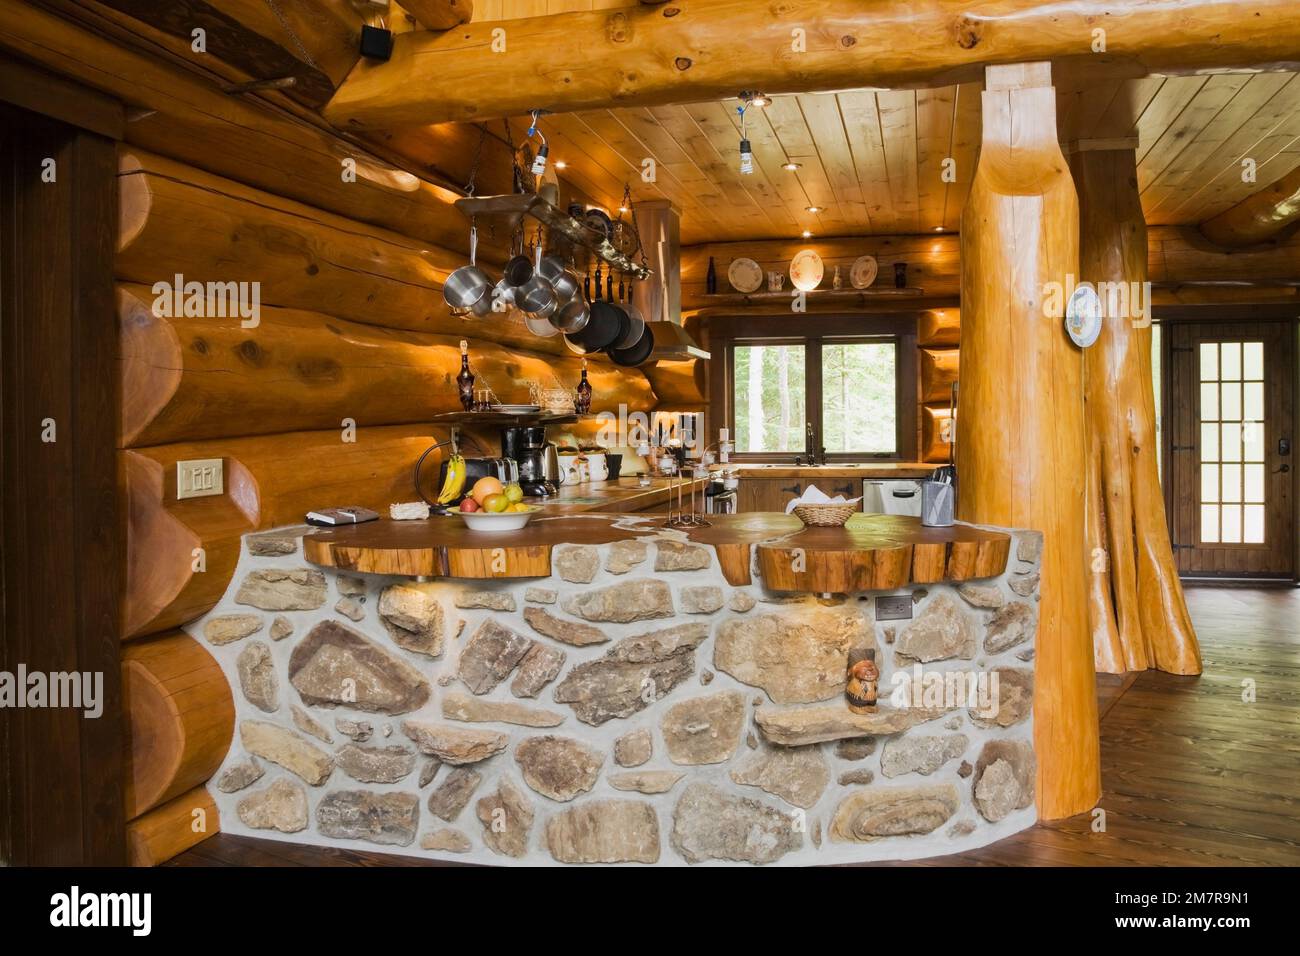 Cuisine avec barre incurvée construite avec des pierres de champ et des roches poreuses à l'intérieur de la maison scandinave en bois de cèdre rouge artisanal. Banque D'Images